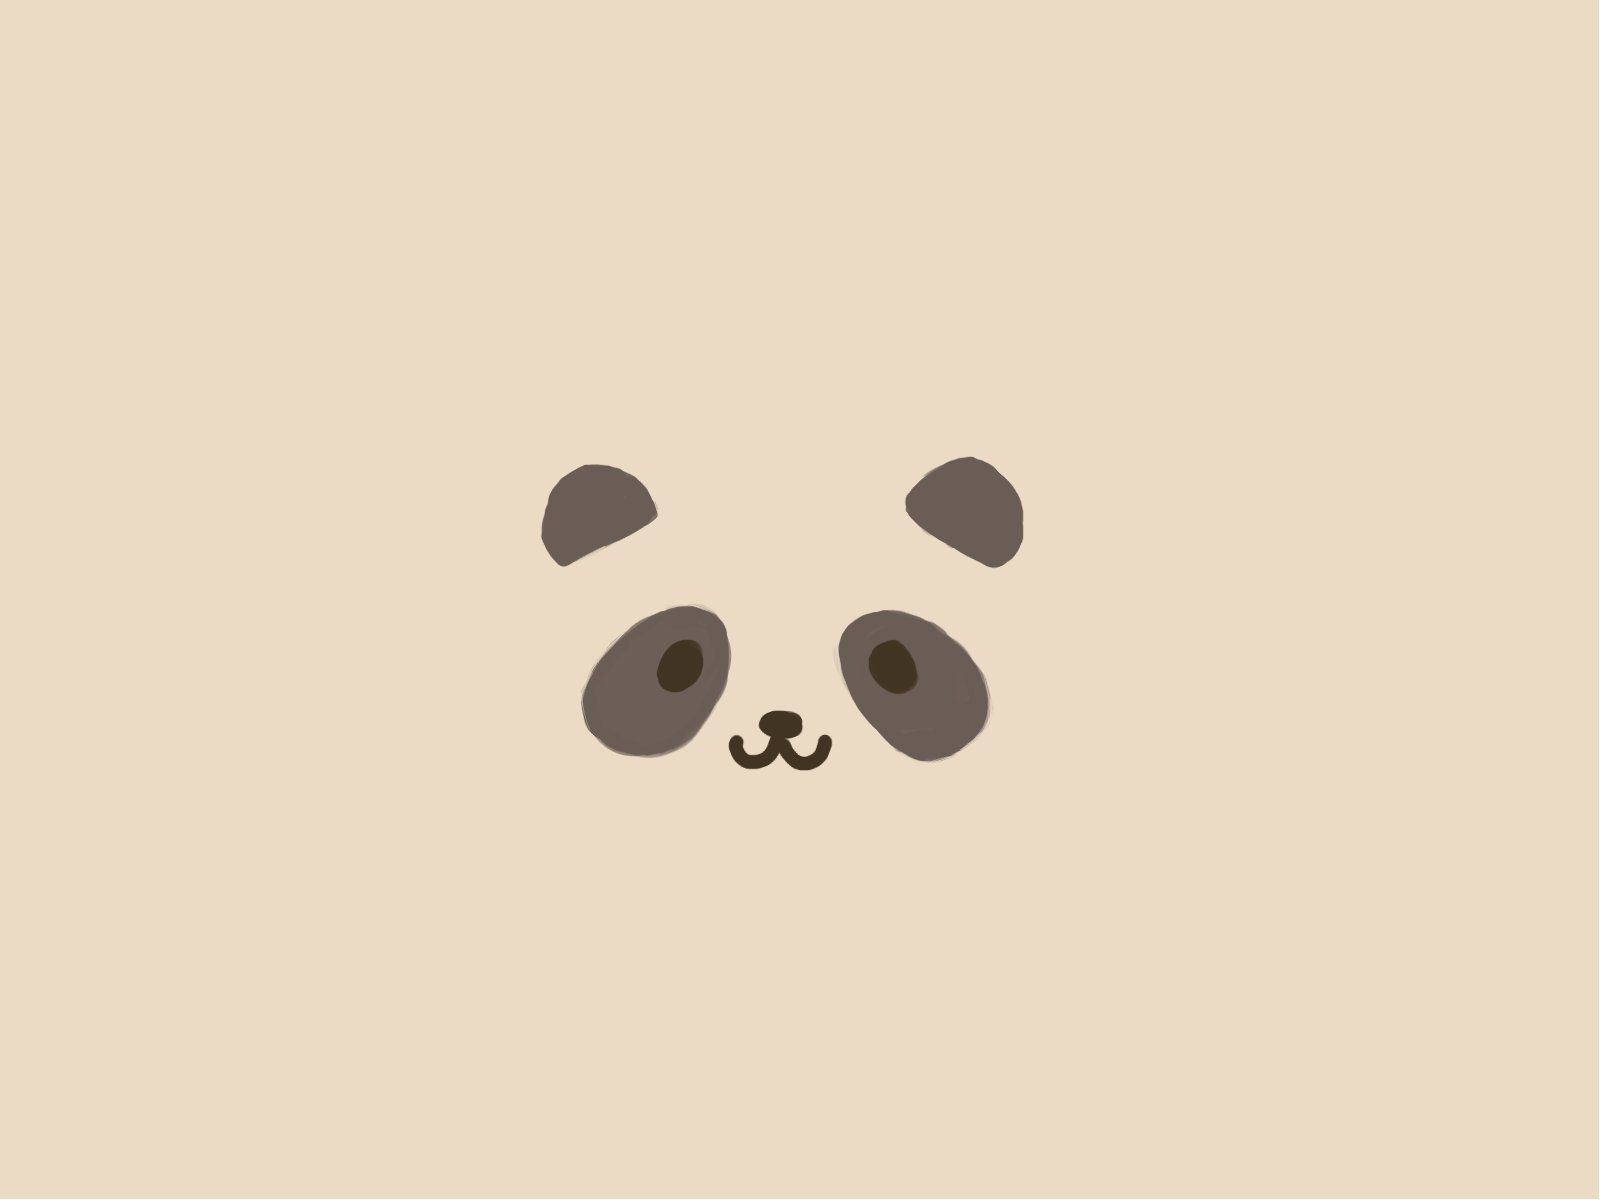 A cute illustration of a panda's face - Panda